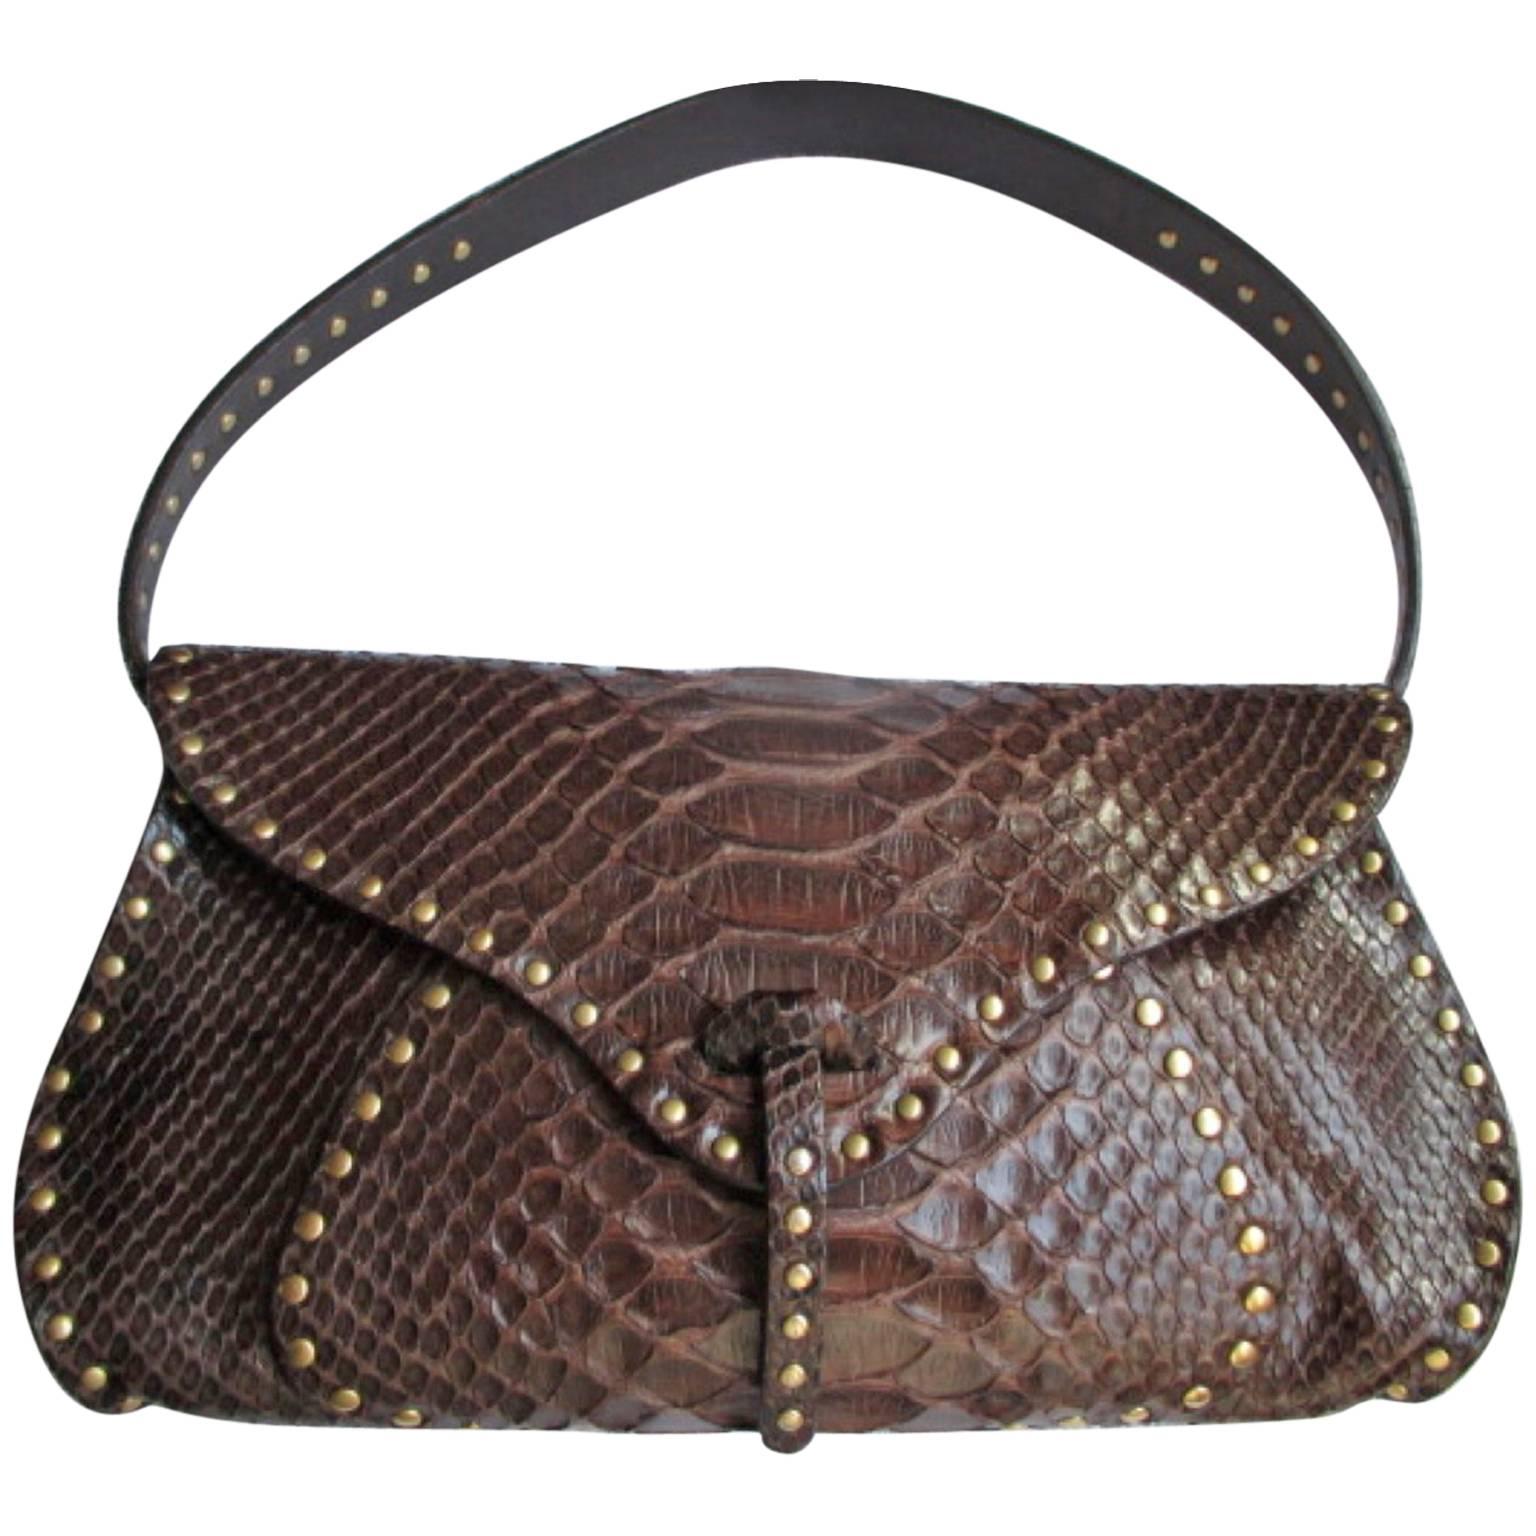 Celine little brown leather shoulderbag